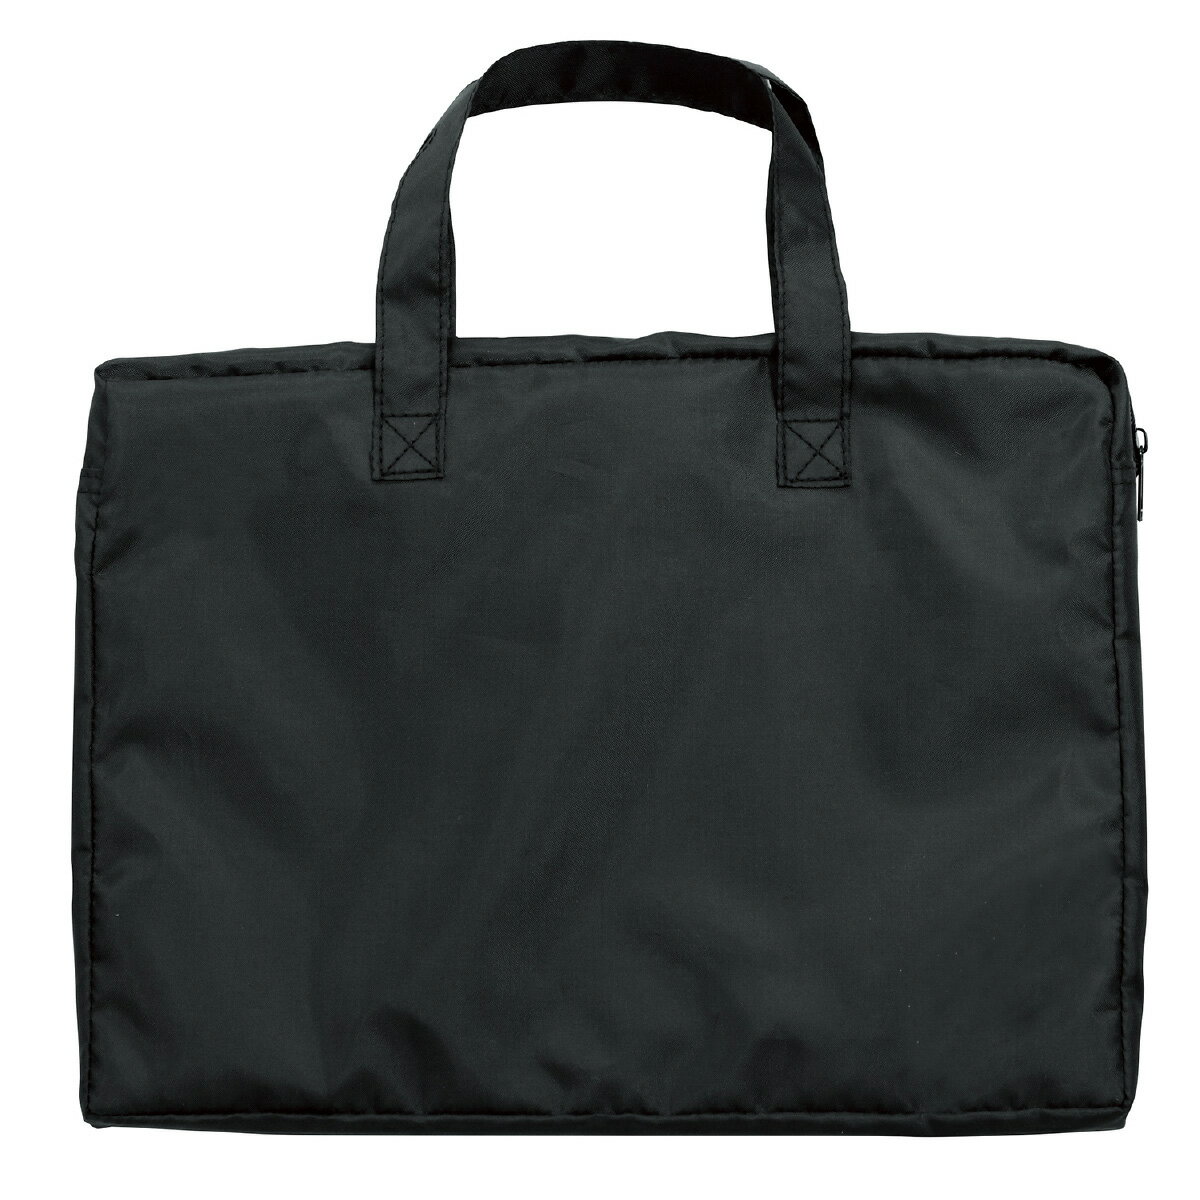 ワイドバッグ A4 バッグ かばん 鞄 学校教材 雑貨 バック ケース 持ち運び